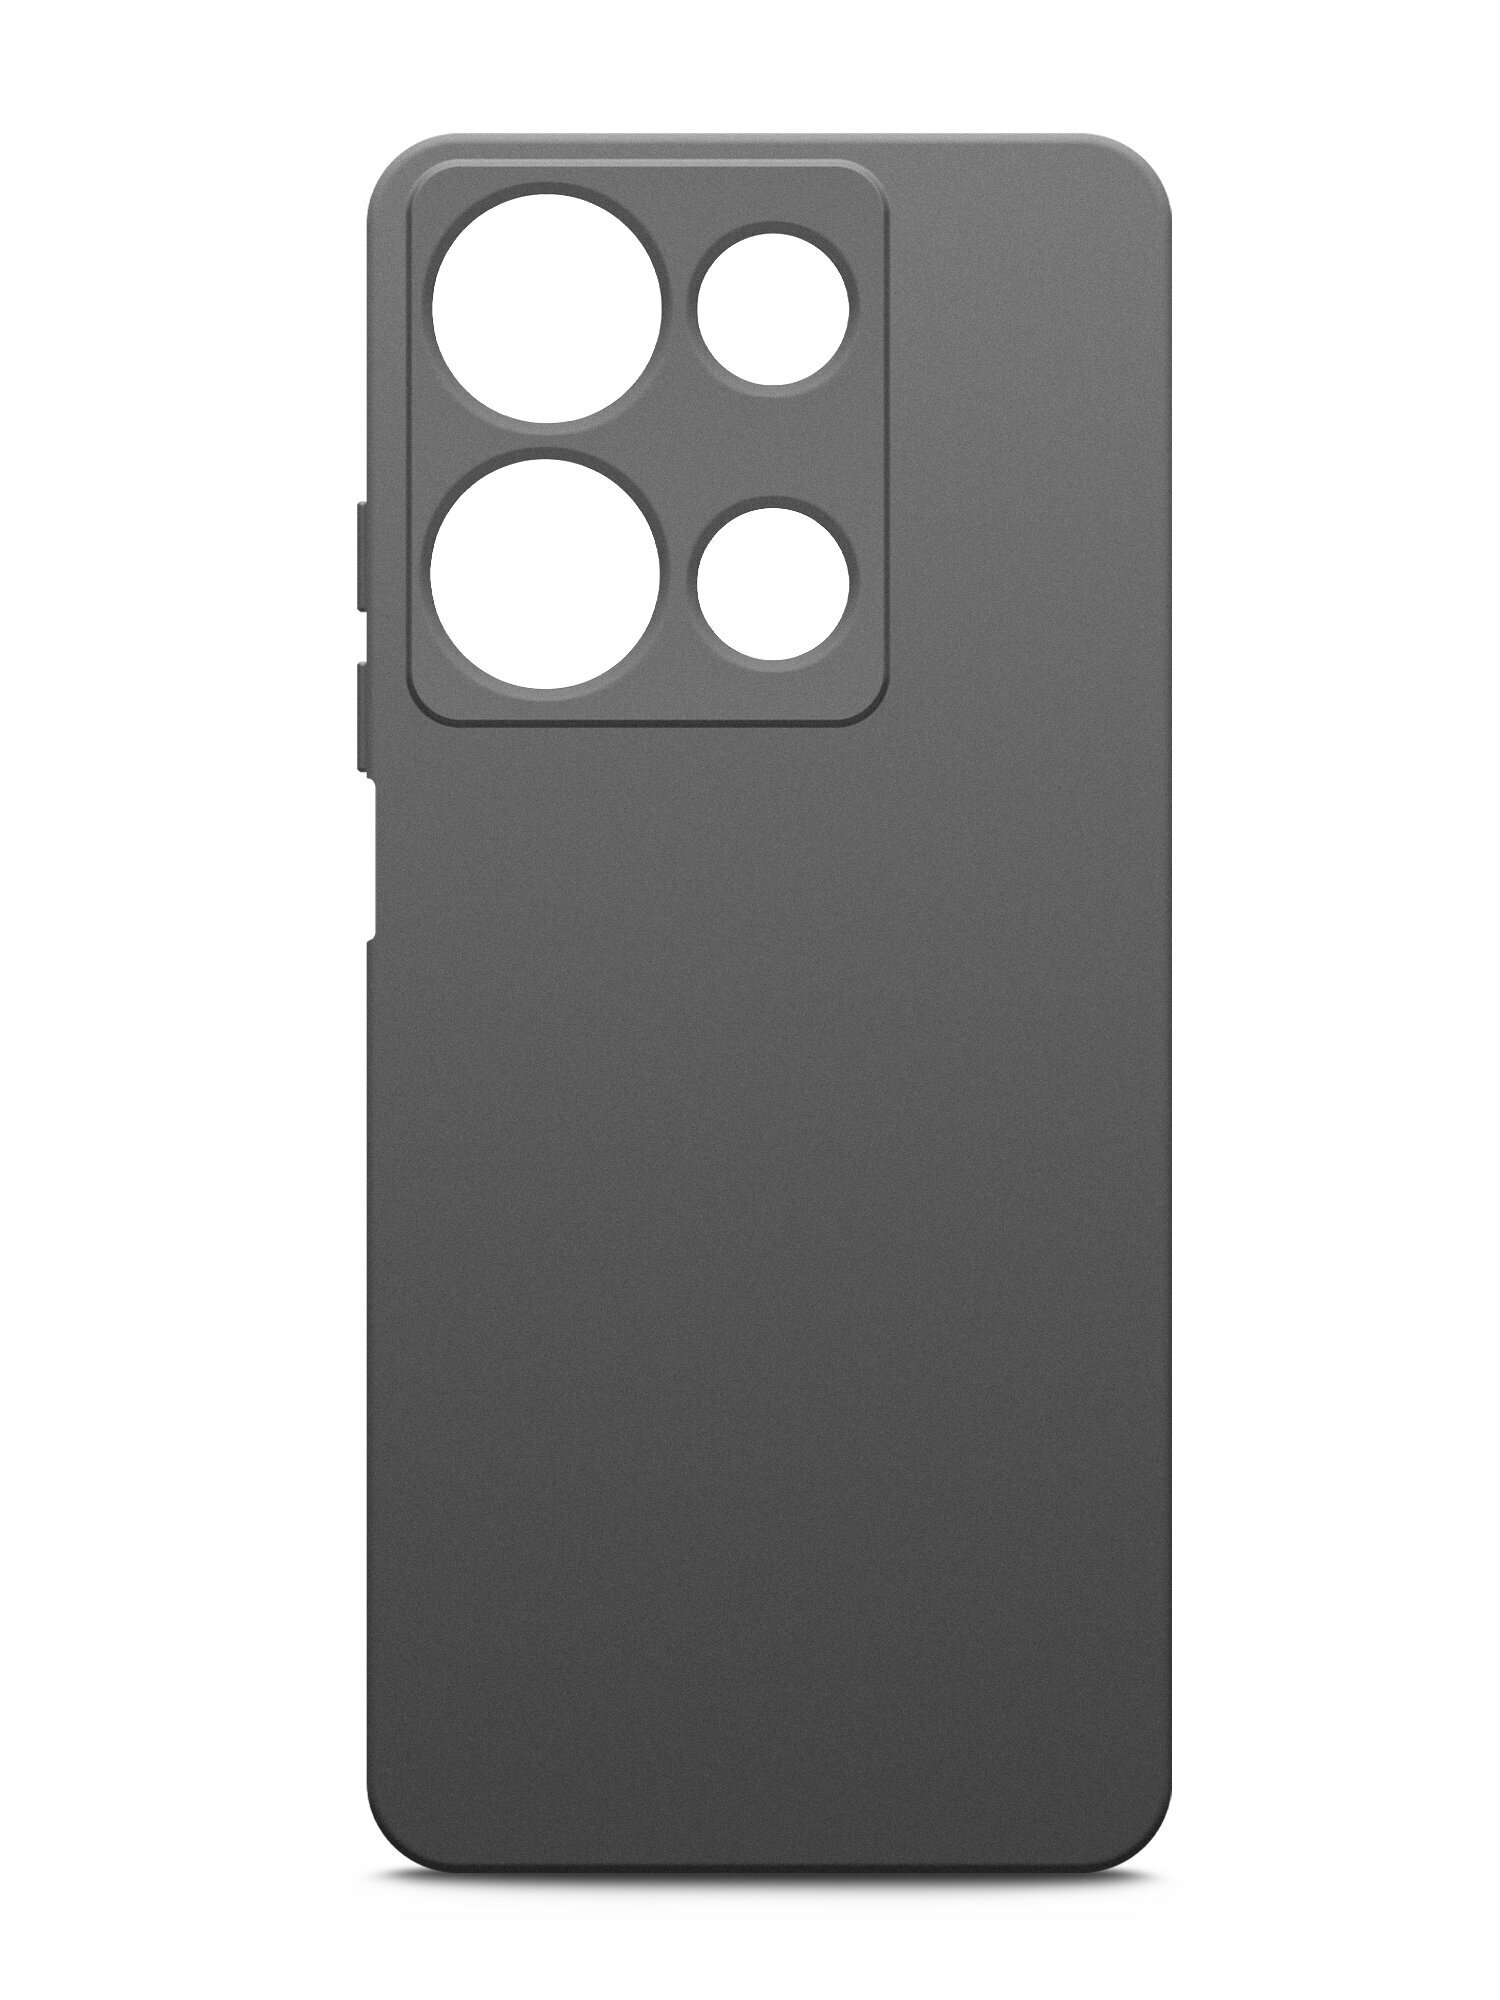 Чехол на Infinix Note 30i (Инфиникс Ноте 30и) черный силиконовый с защитной подкладкой из микрофибры Microfiber Case, Brozo